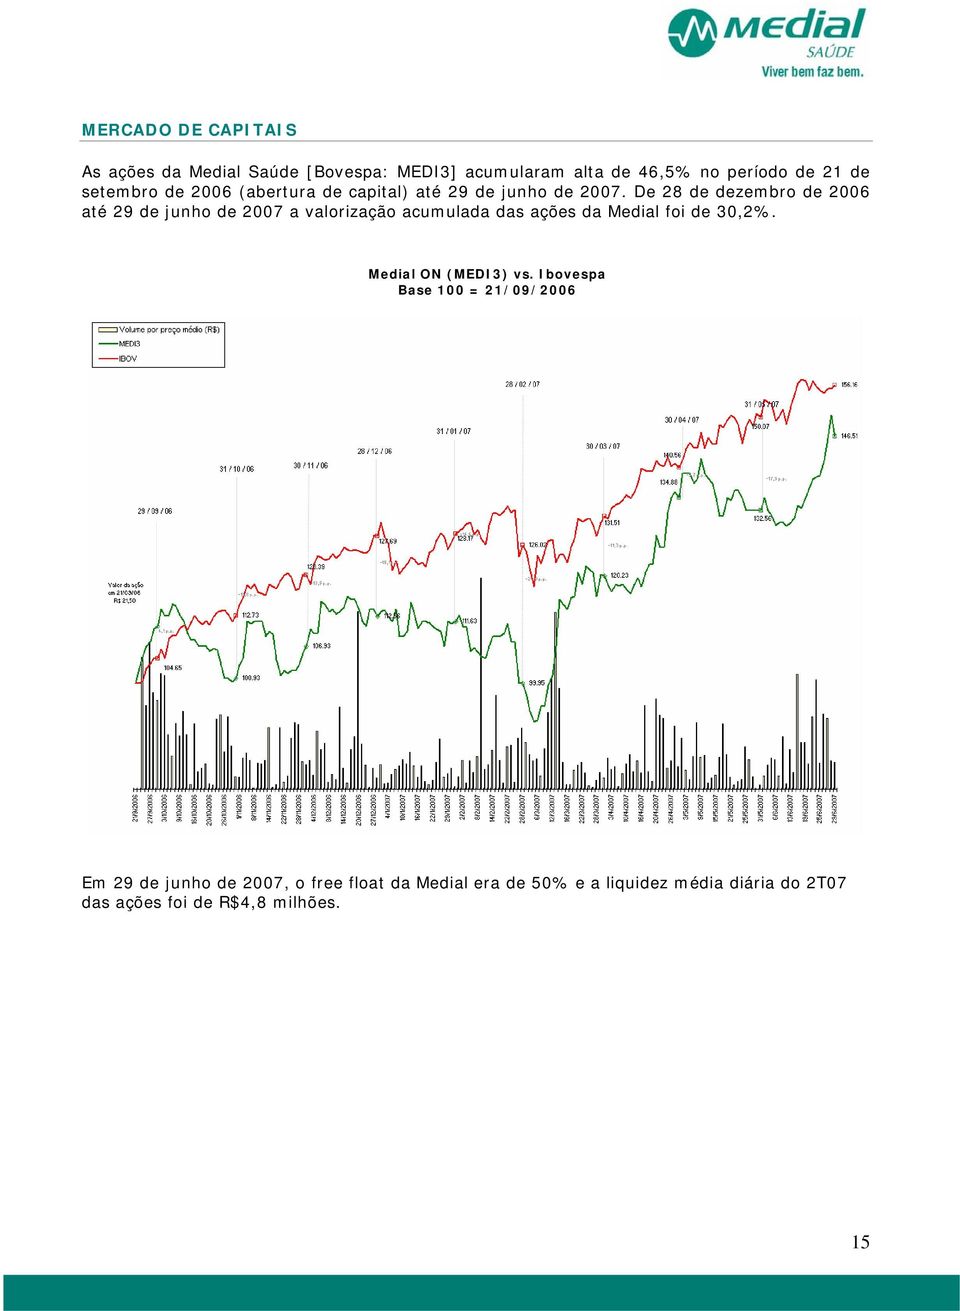 De 28 de dezembro de 2006 até 29 de junho de 2007 a valorização acumulada das ações da Medial foi de 30,2%.